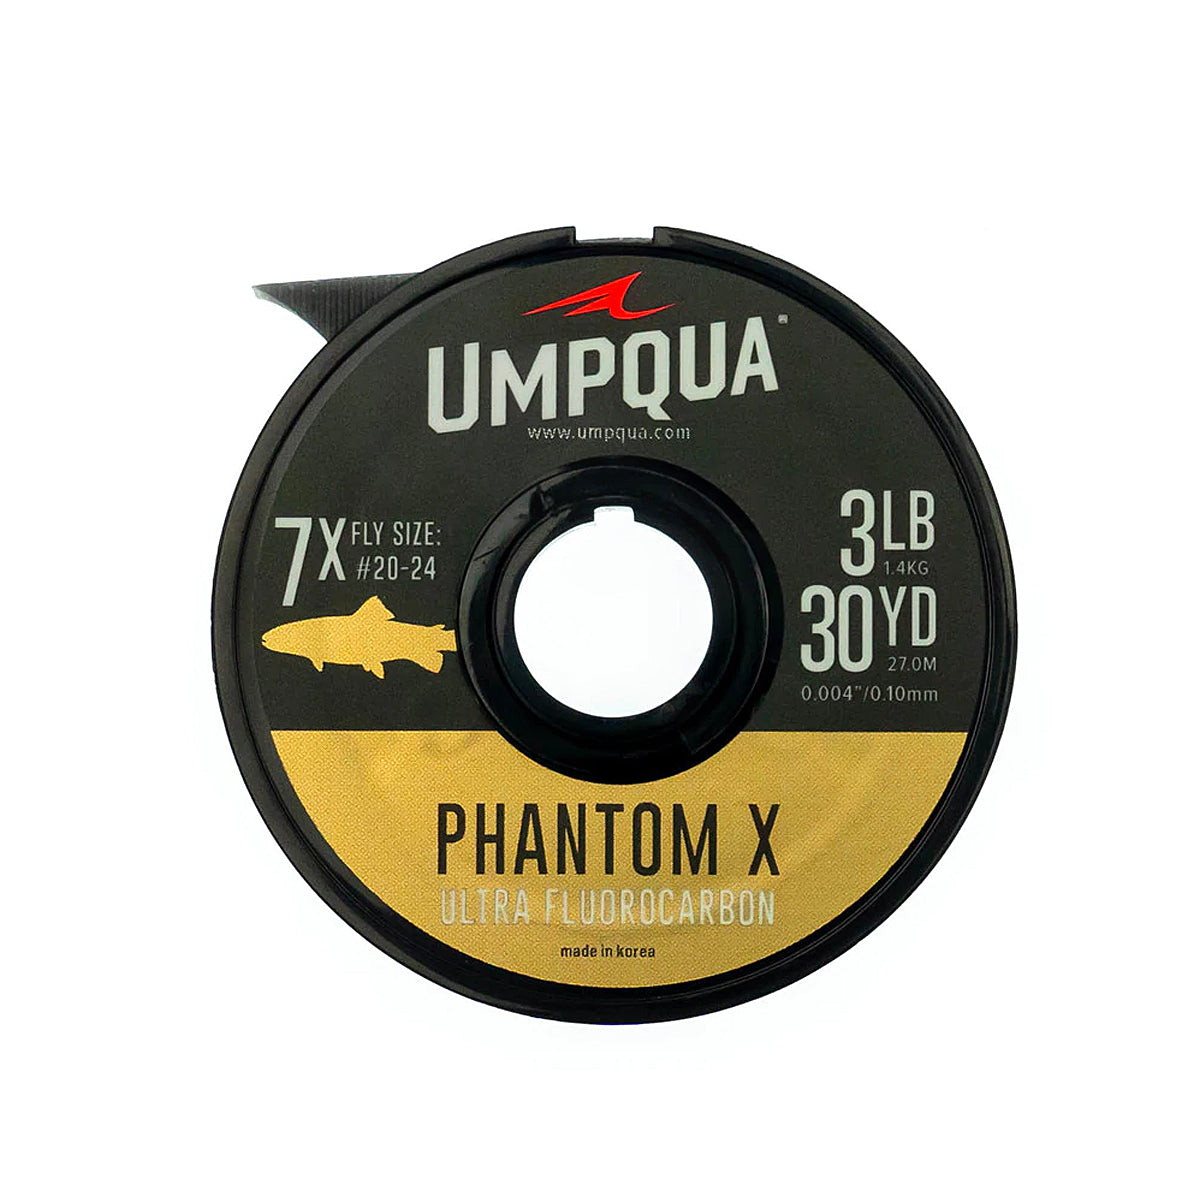 Umpqua Phantom X Tippet